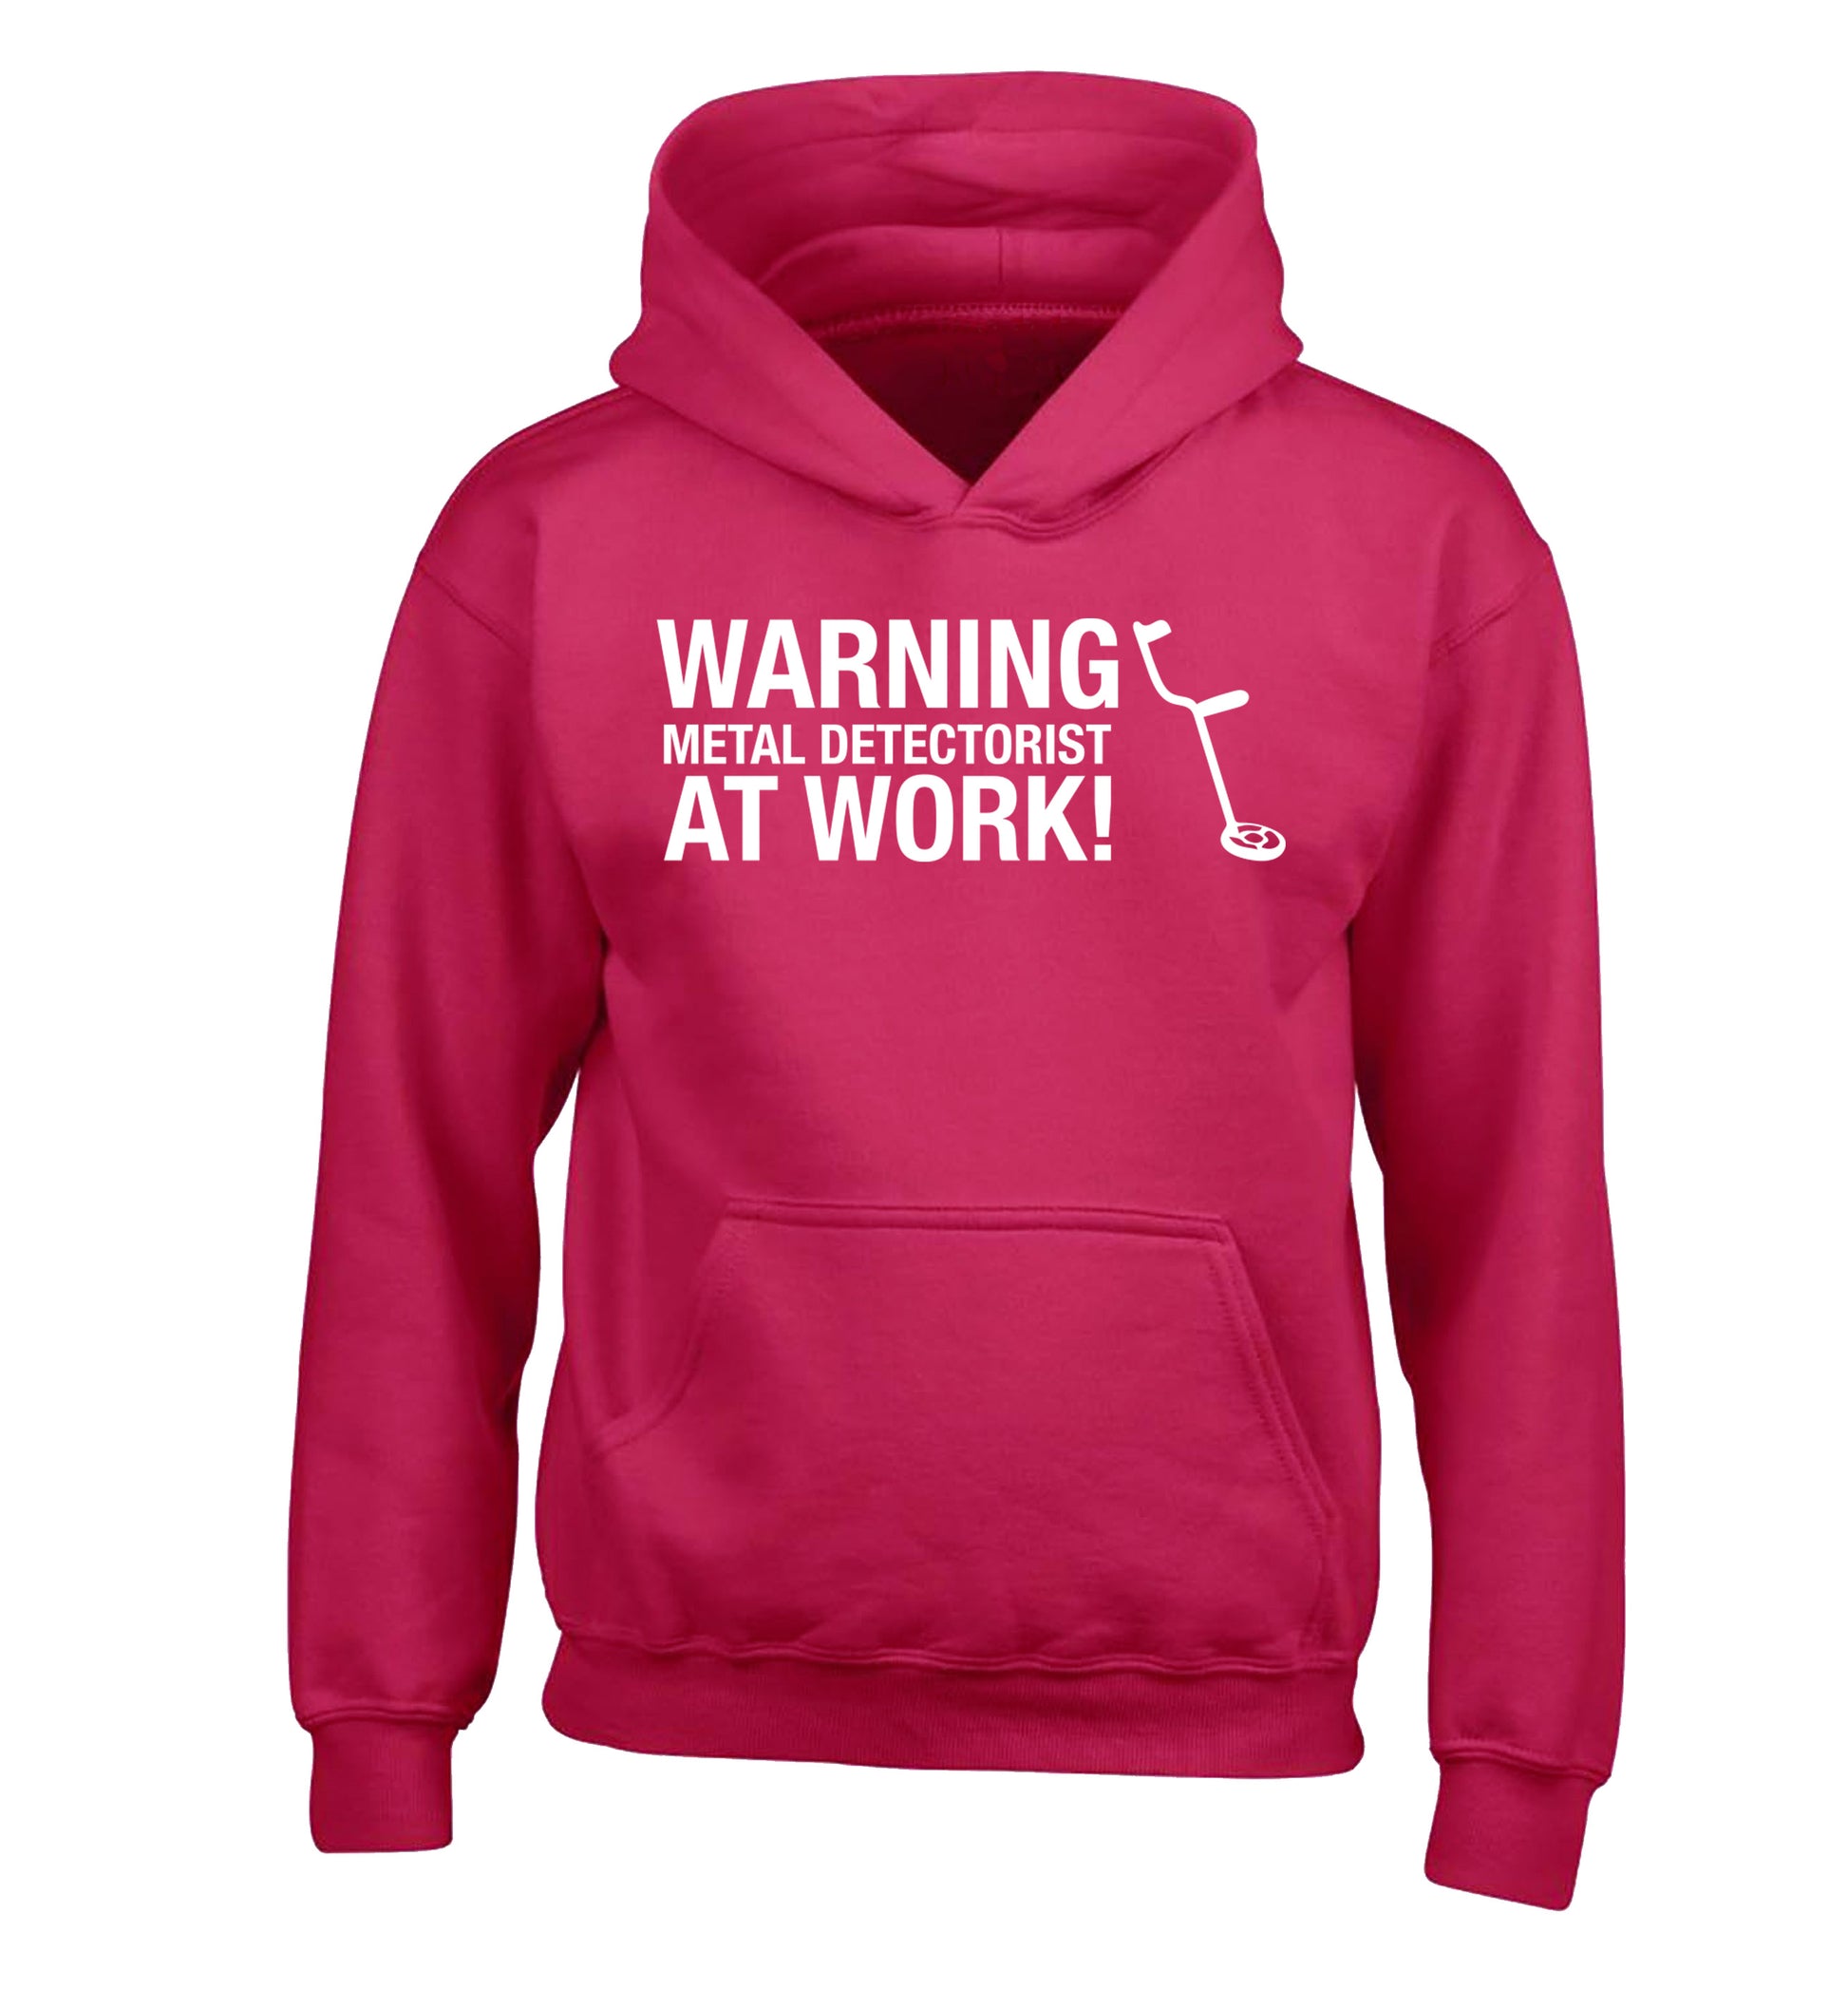 Warning metal detectorist at work! children's pink hoodie 12-13 Years